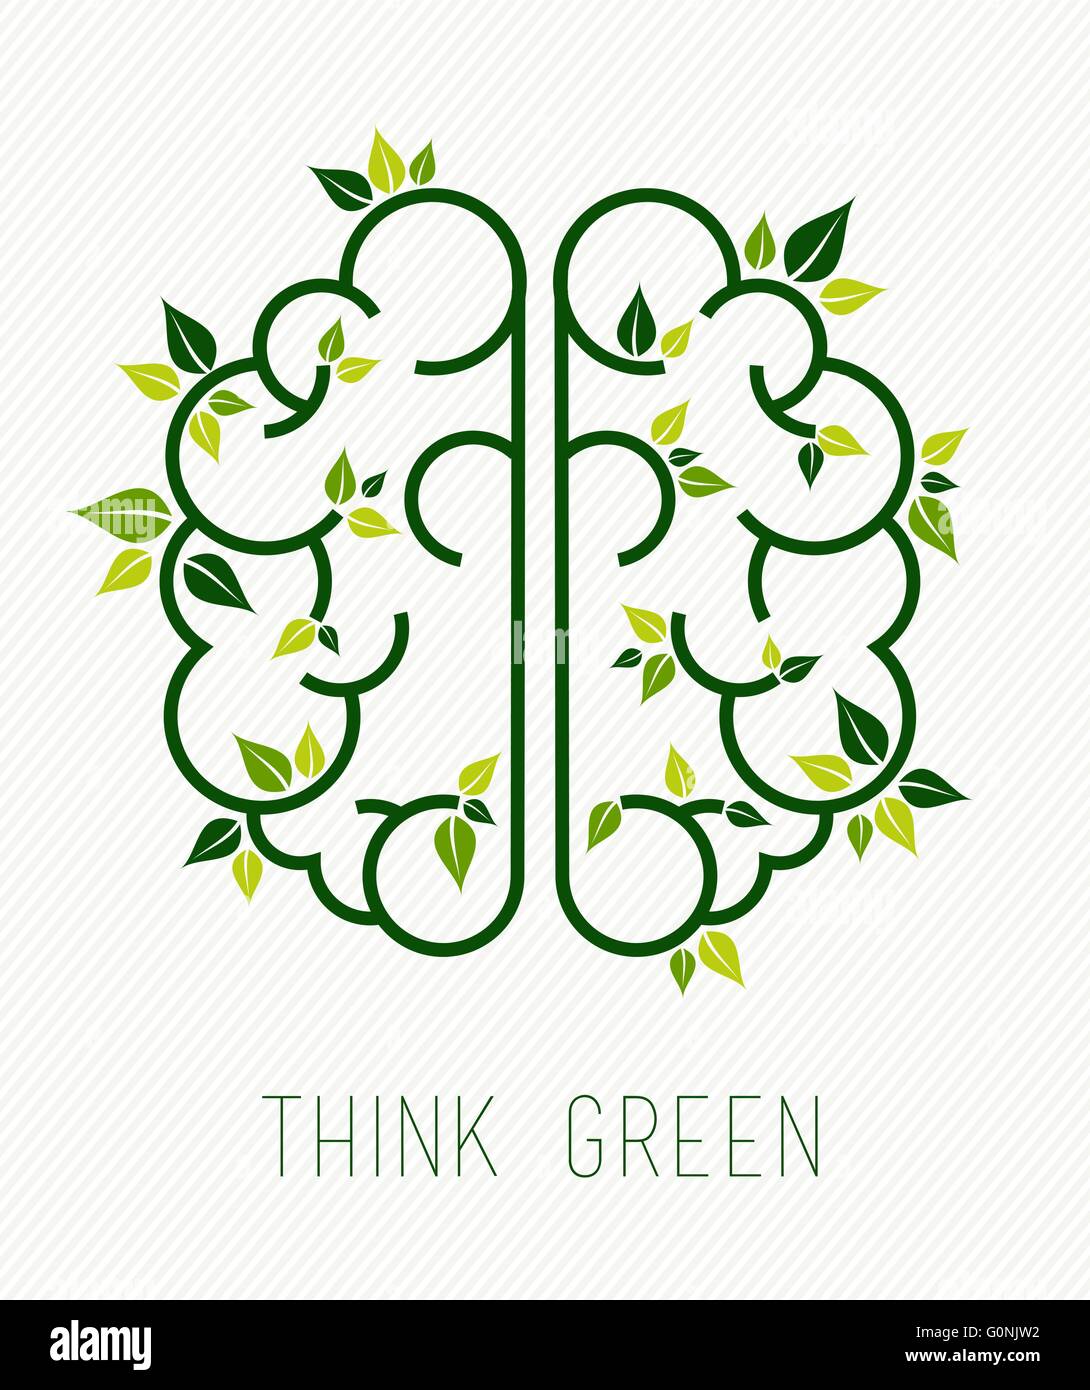 Think green concept design, semplice cervello umano in linea stile arte con gli elementi della natura e le foglie di piante. EPS10 vettore. Illustrazione Vettoriale